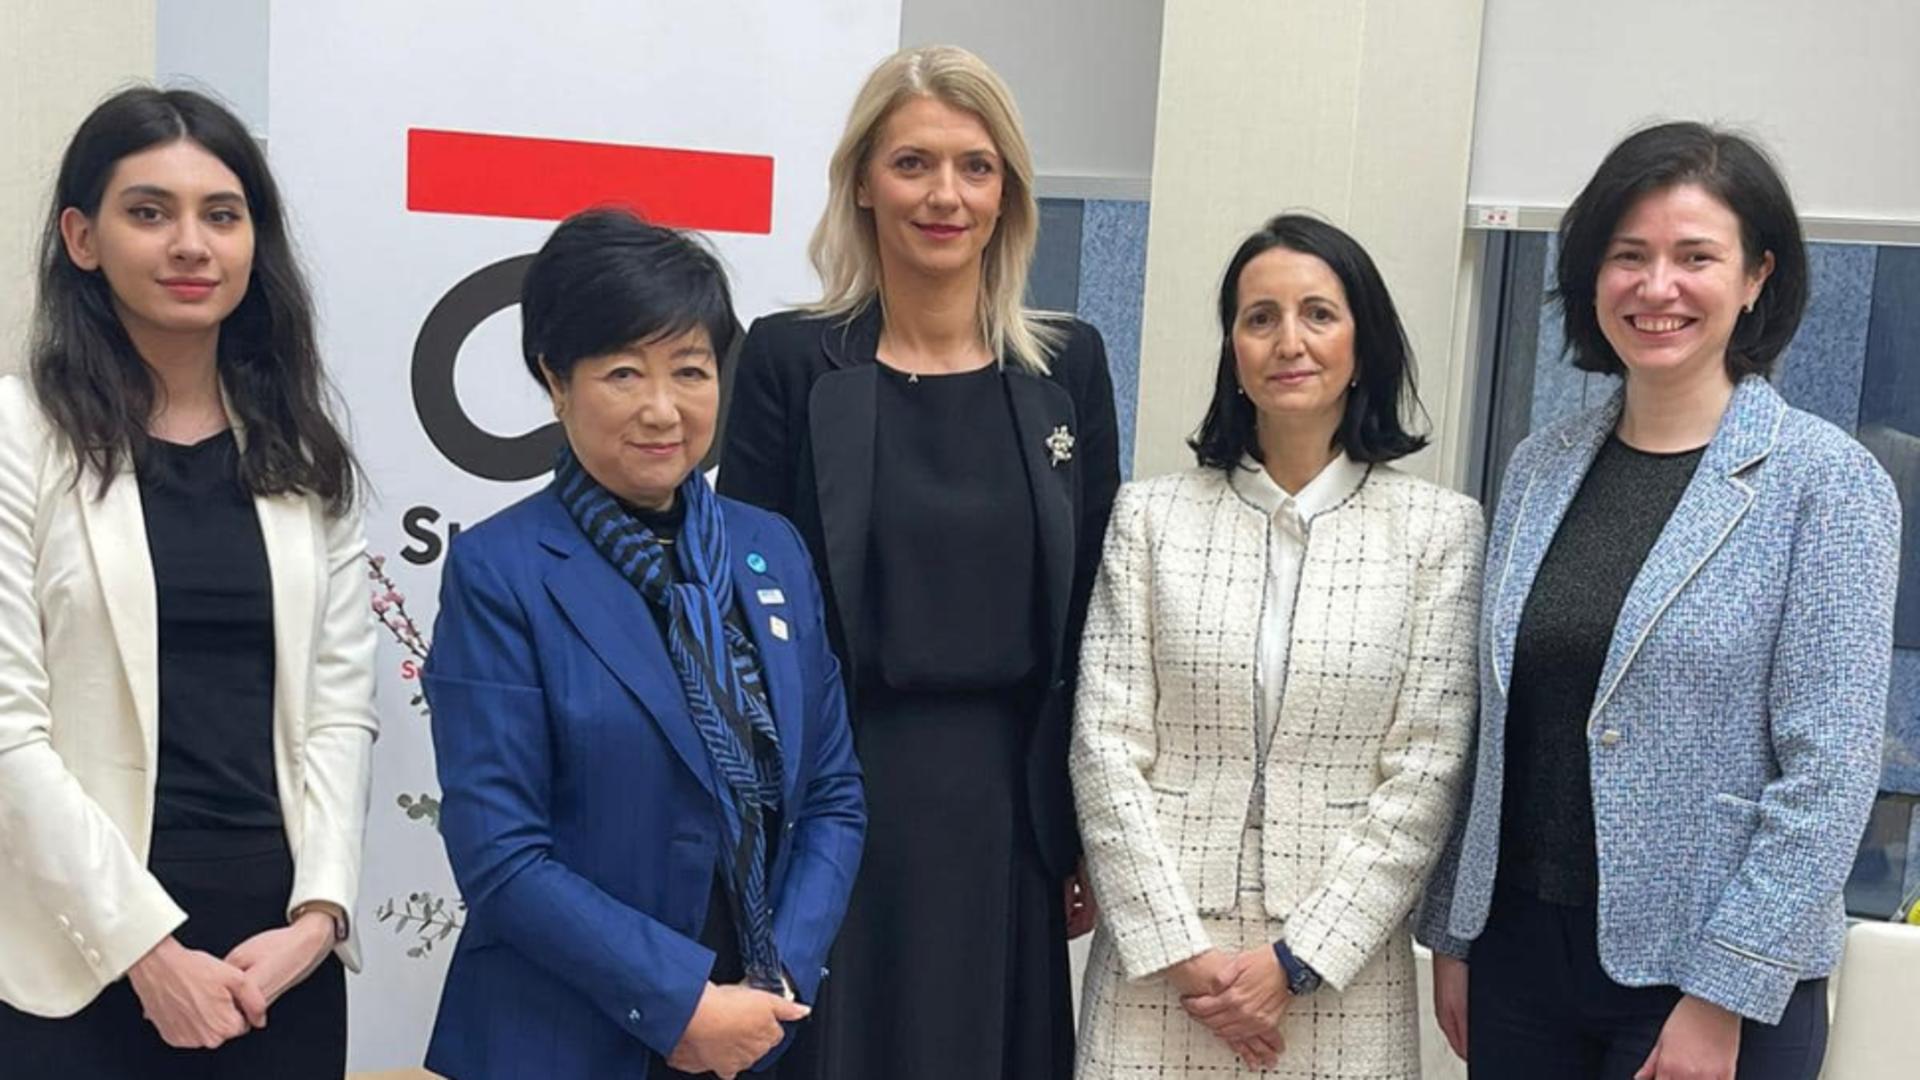 Alina Gorghiu s-a întâlnit cu guvernatoarea Prefecturii Tokyo. Egalitatea dintre femei şi bărbaţi în politică, printre subiectele tranșate la masa discuțiilor